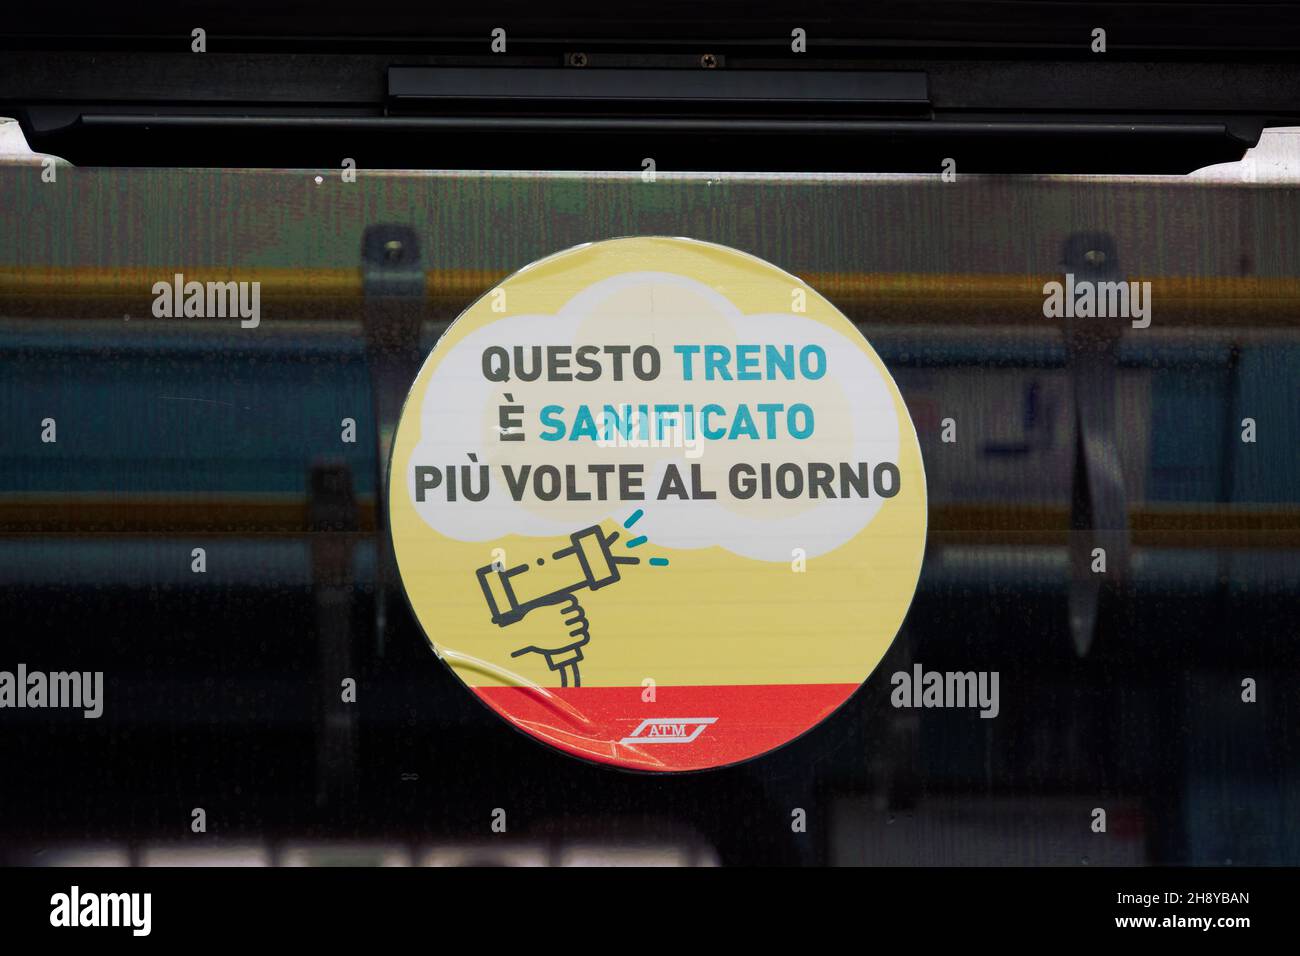 Milano, Italia coach window covid-19 banner di protezione che indica la zona è disinfettata. Accedi al vagone della metropolitana con il messaggio in italiano che questo treno è sanitizzato più volte al giorno. Foto Stock